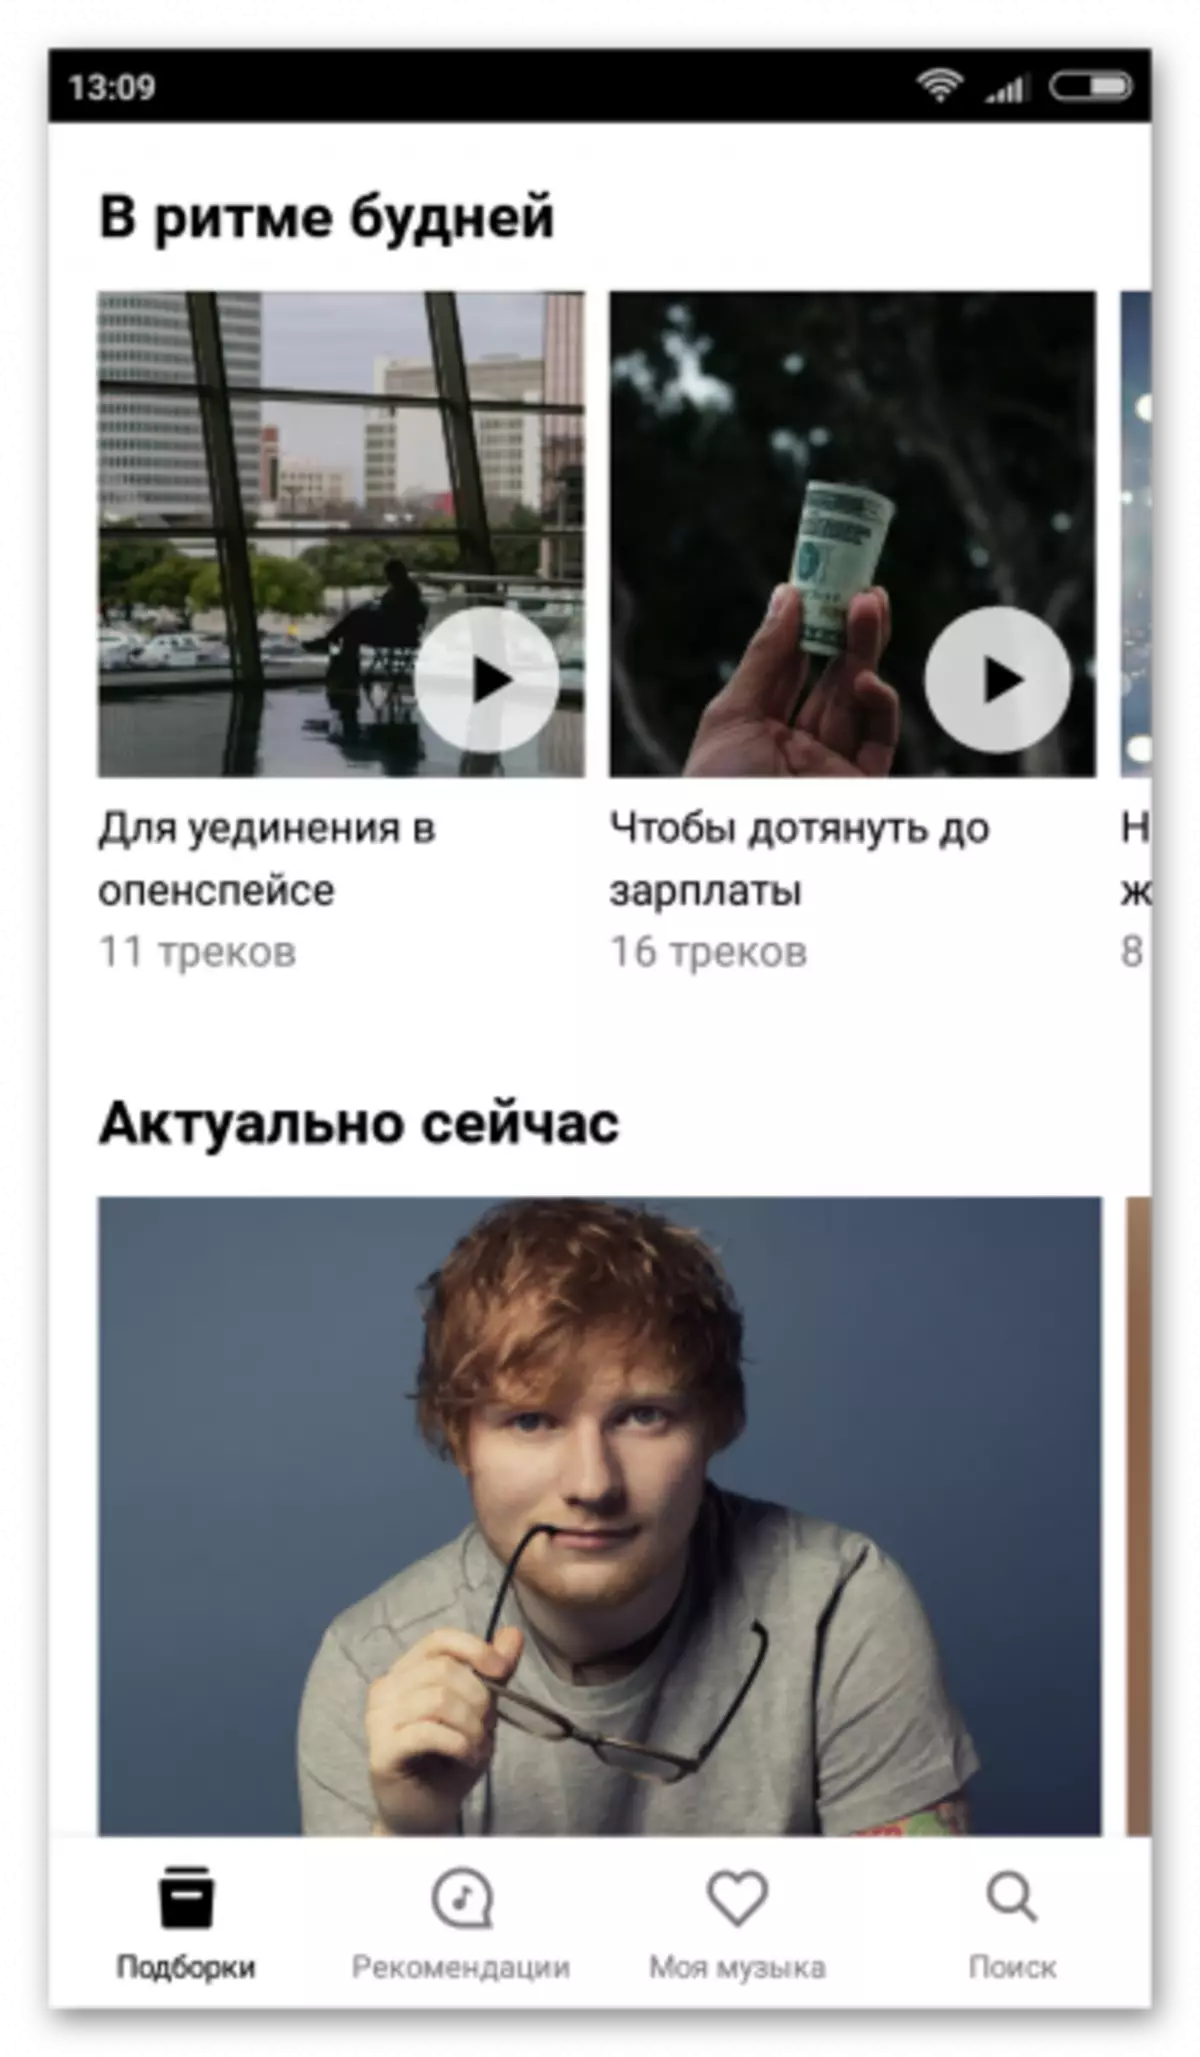 Yandex.music na gam akporo